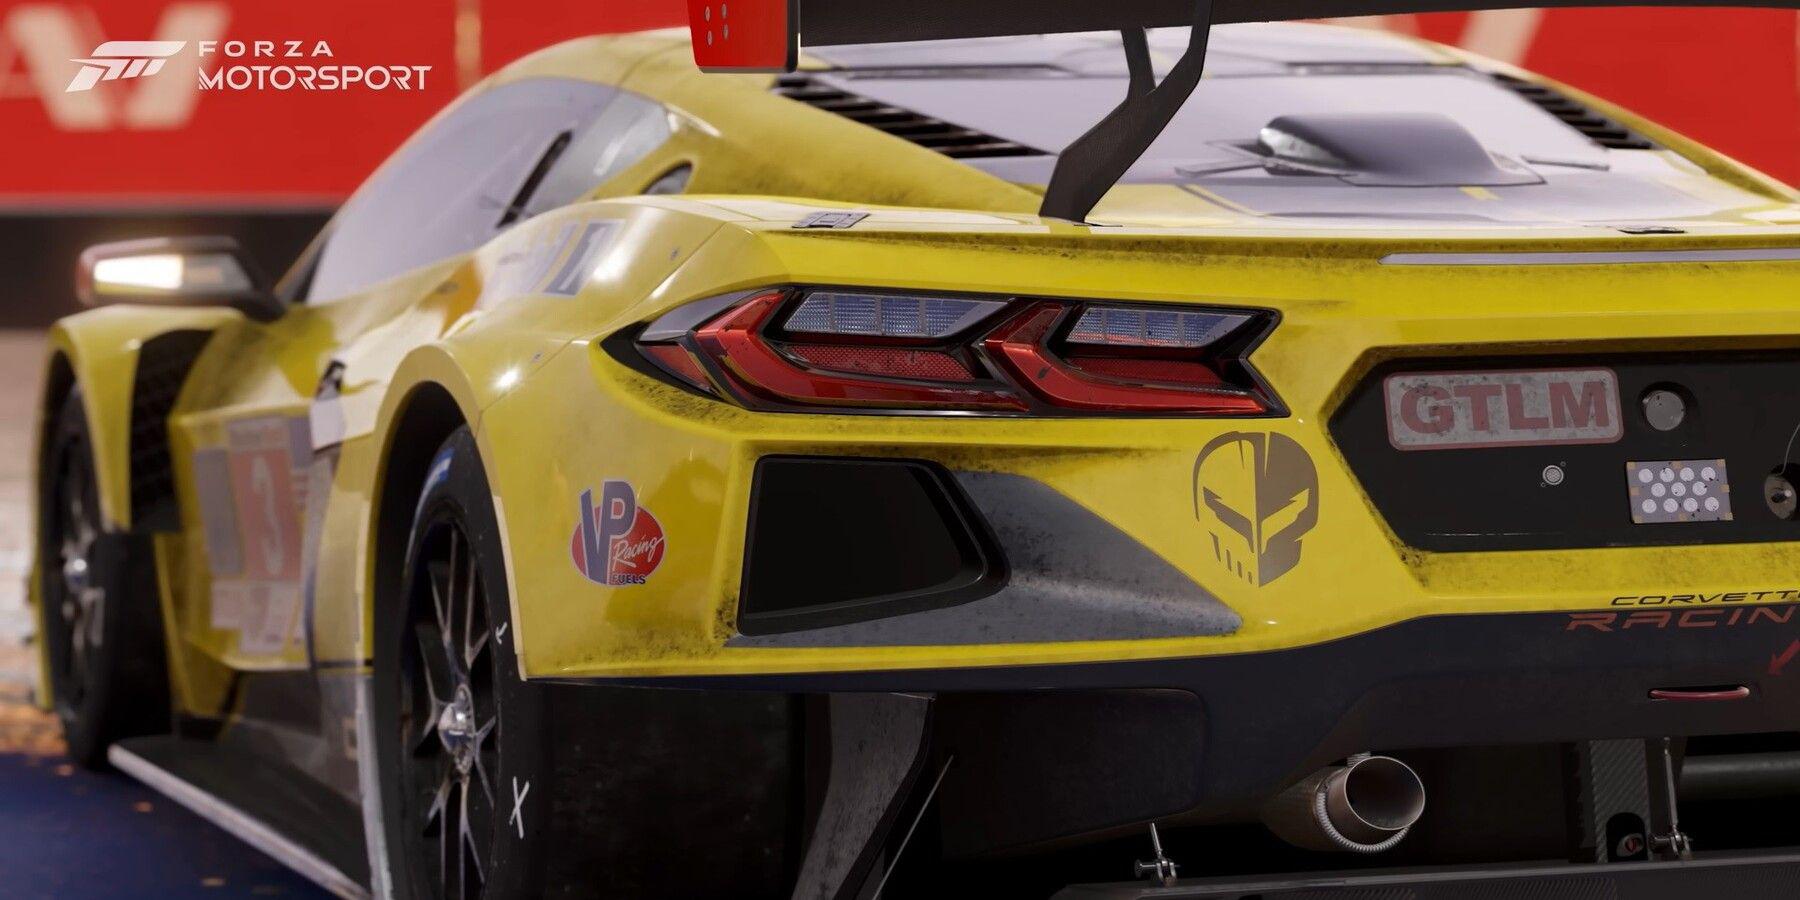 Os shaders e pinturas reativas à luz do Forza Motorsport levam os gráficos de última geração ao próximo nível